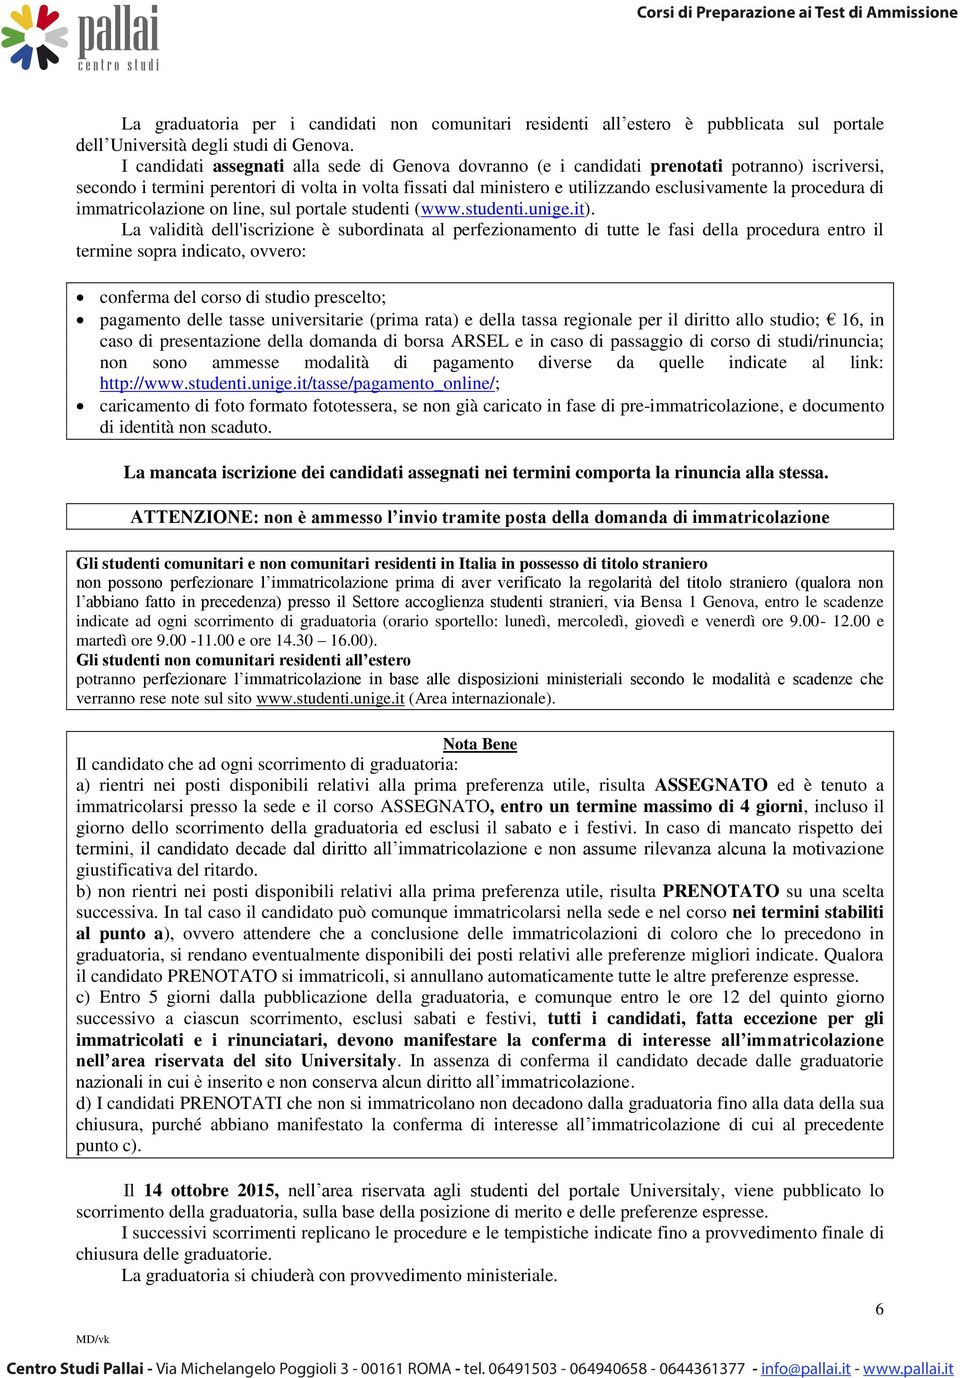 procedura di immatricolazione on line, sul portale studenti (www.studenti.unige.it).